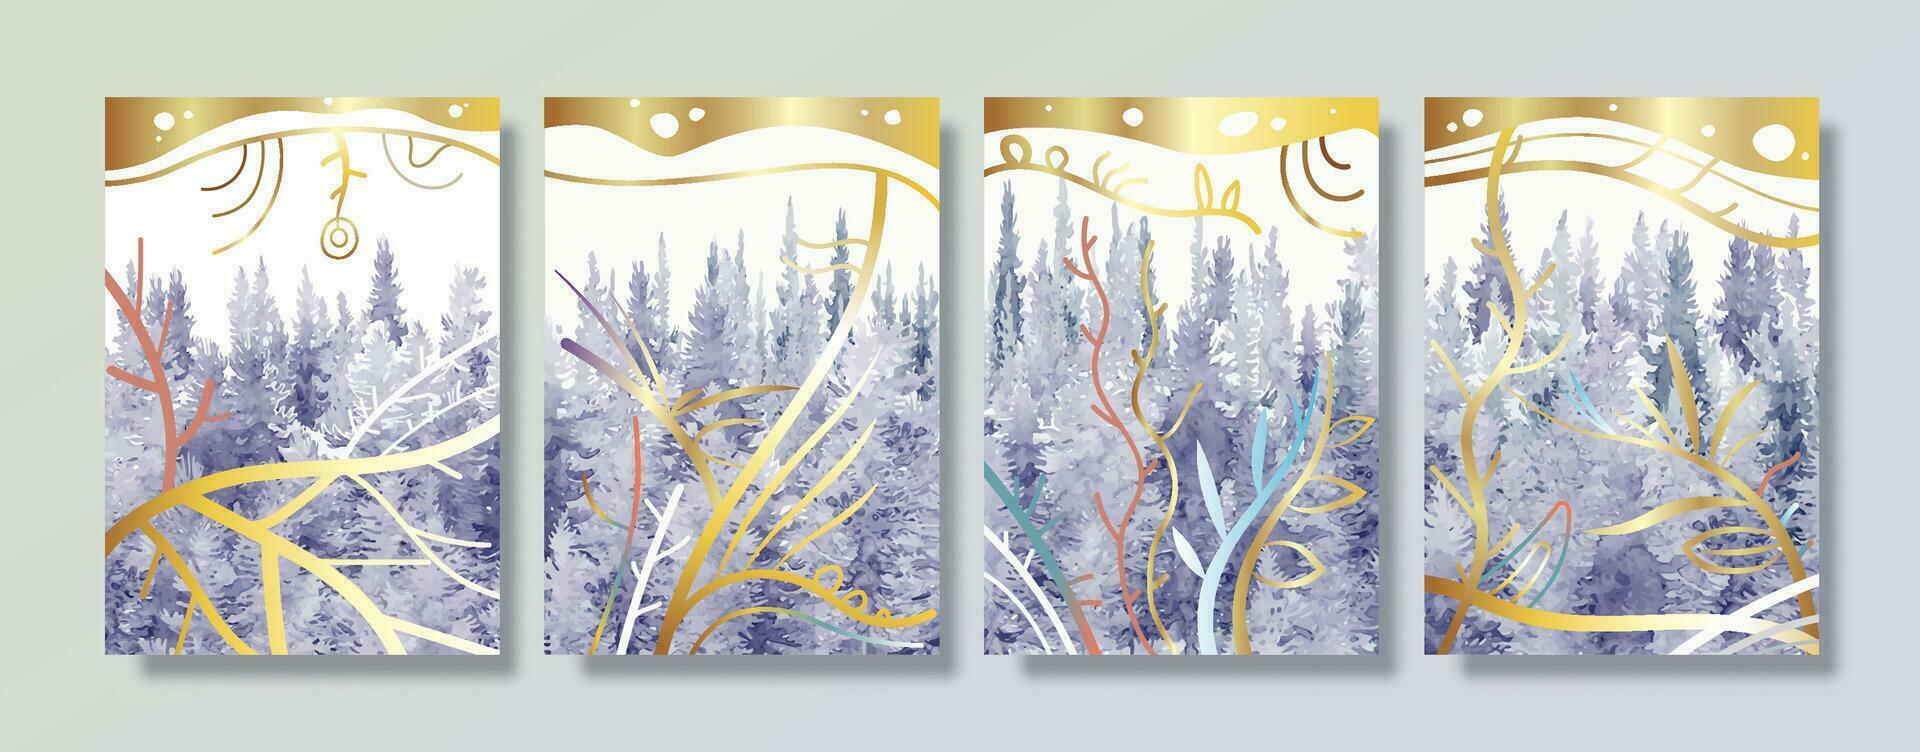 modern landskap tall träd abstrakt med guld linje konst vattenfärg målning bakgrund. vektor